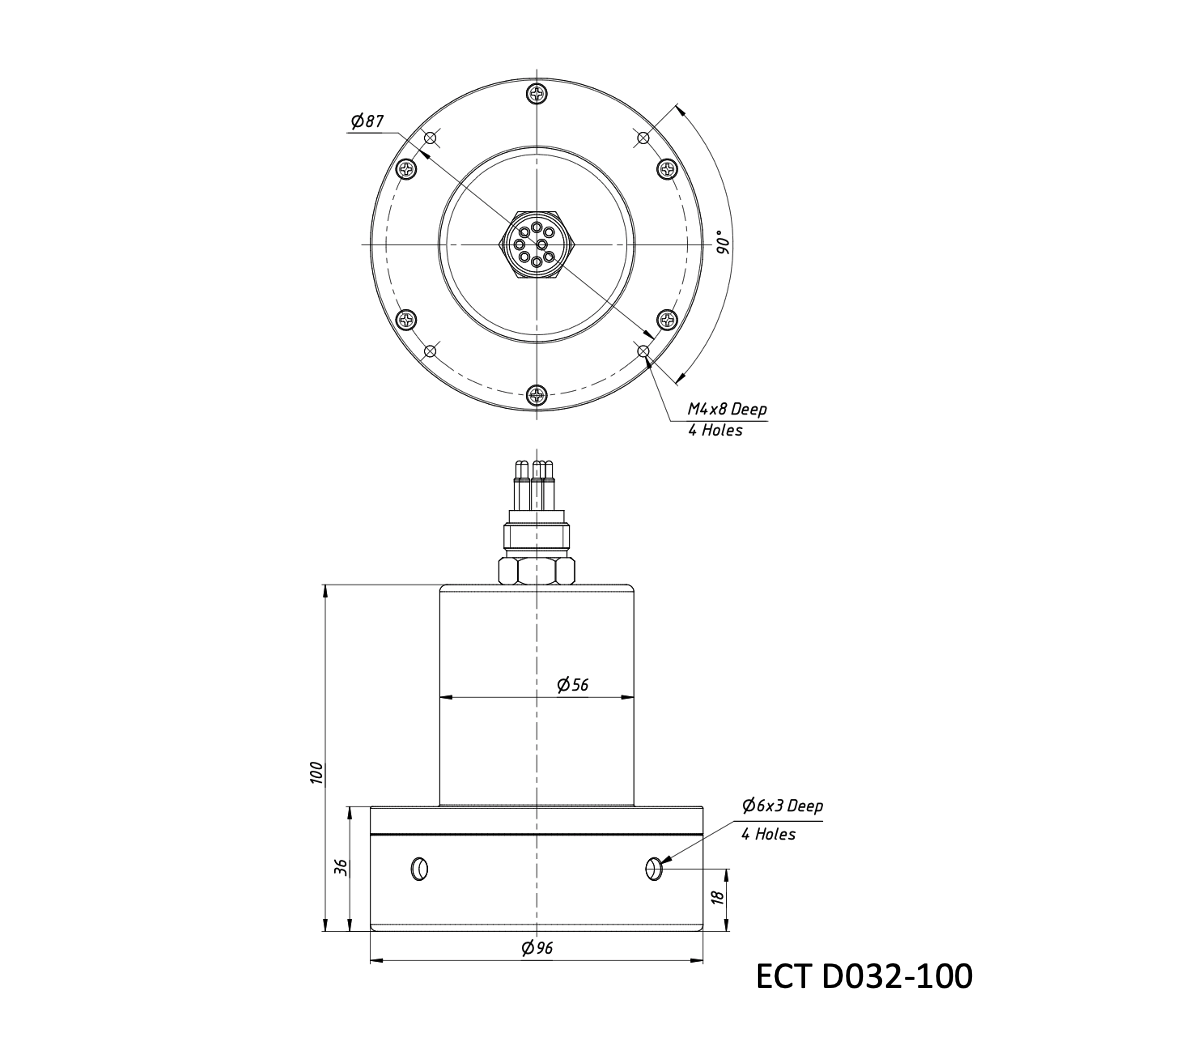 Echologger Echosounder ECT D052-100 dimensions